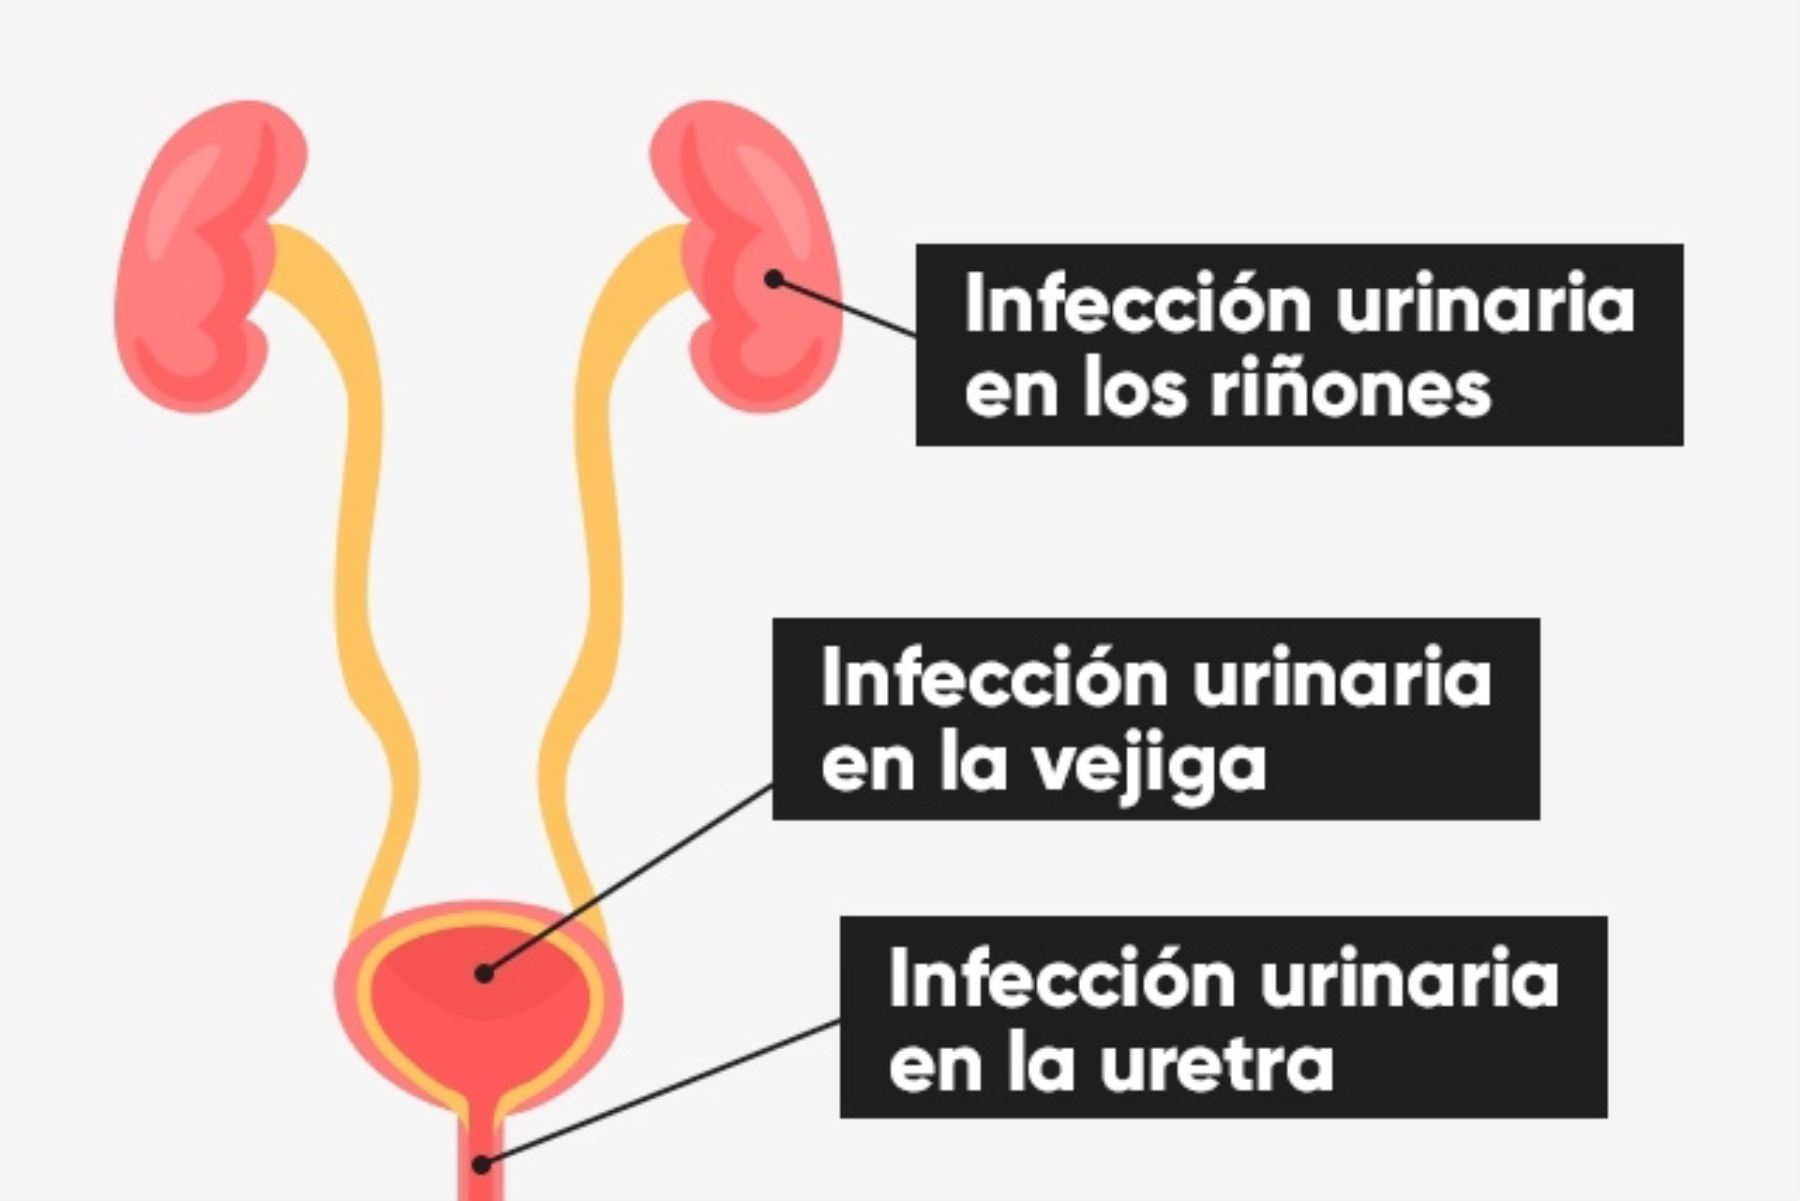 Infeccion de orina y cetosis